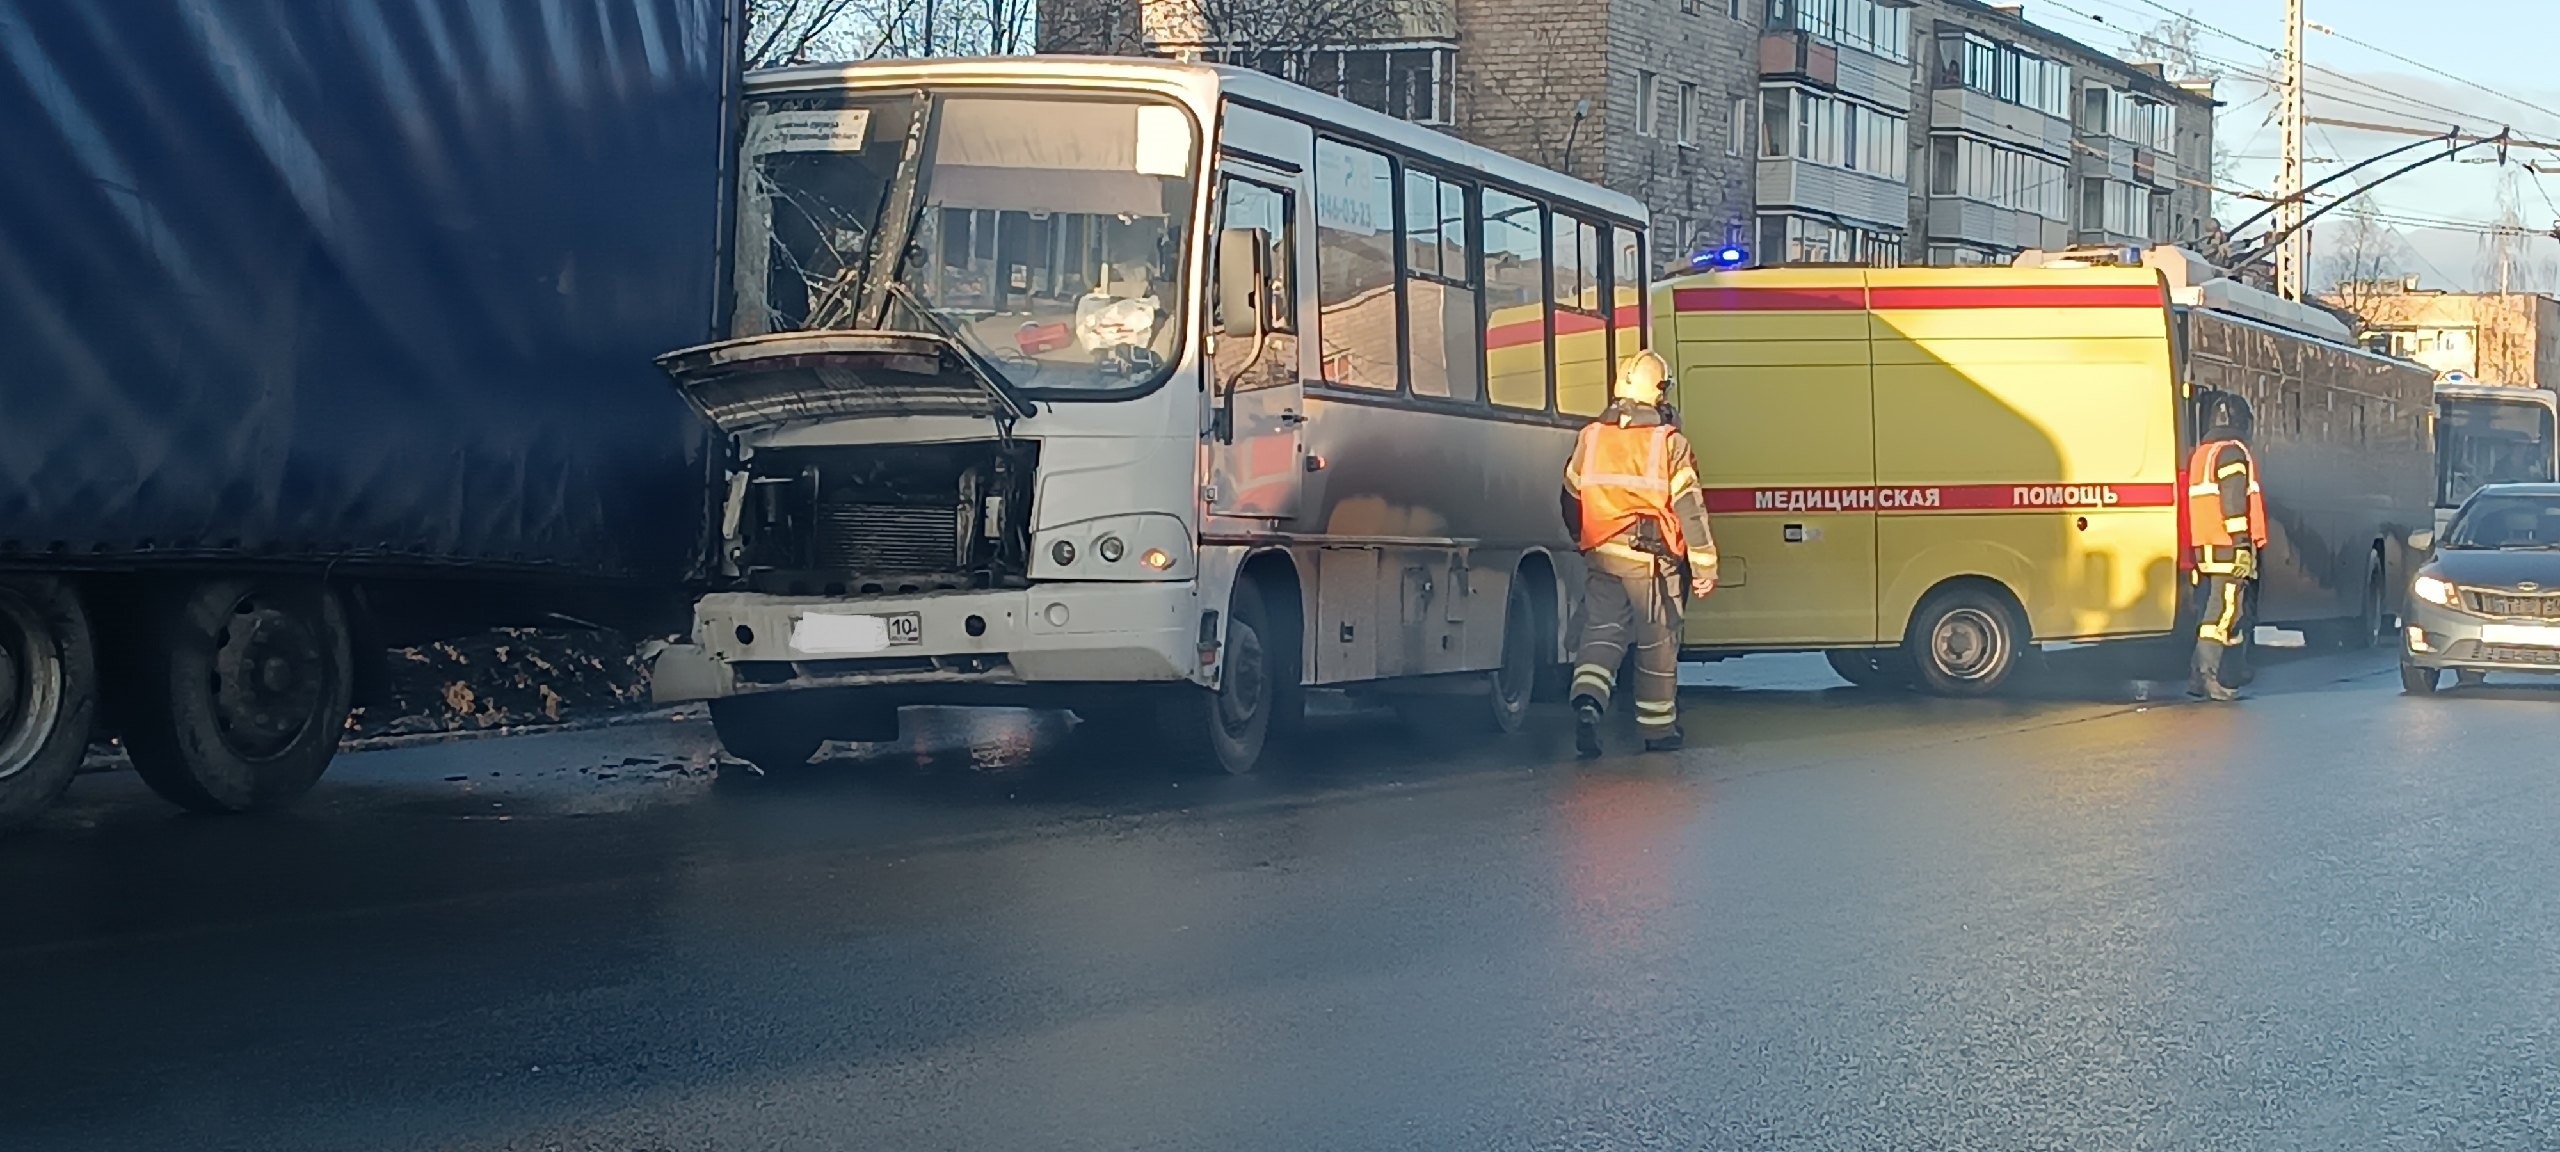 Маршрутка врезалась в грузовик на оживленном проспекте Петрозаводска